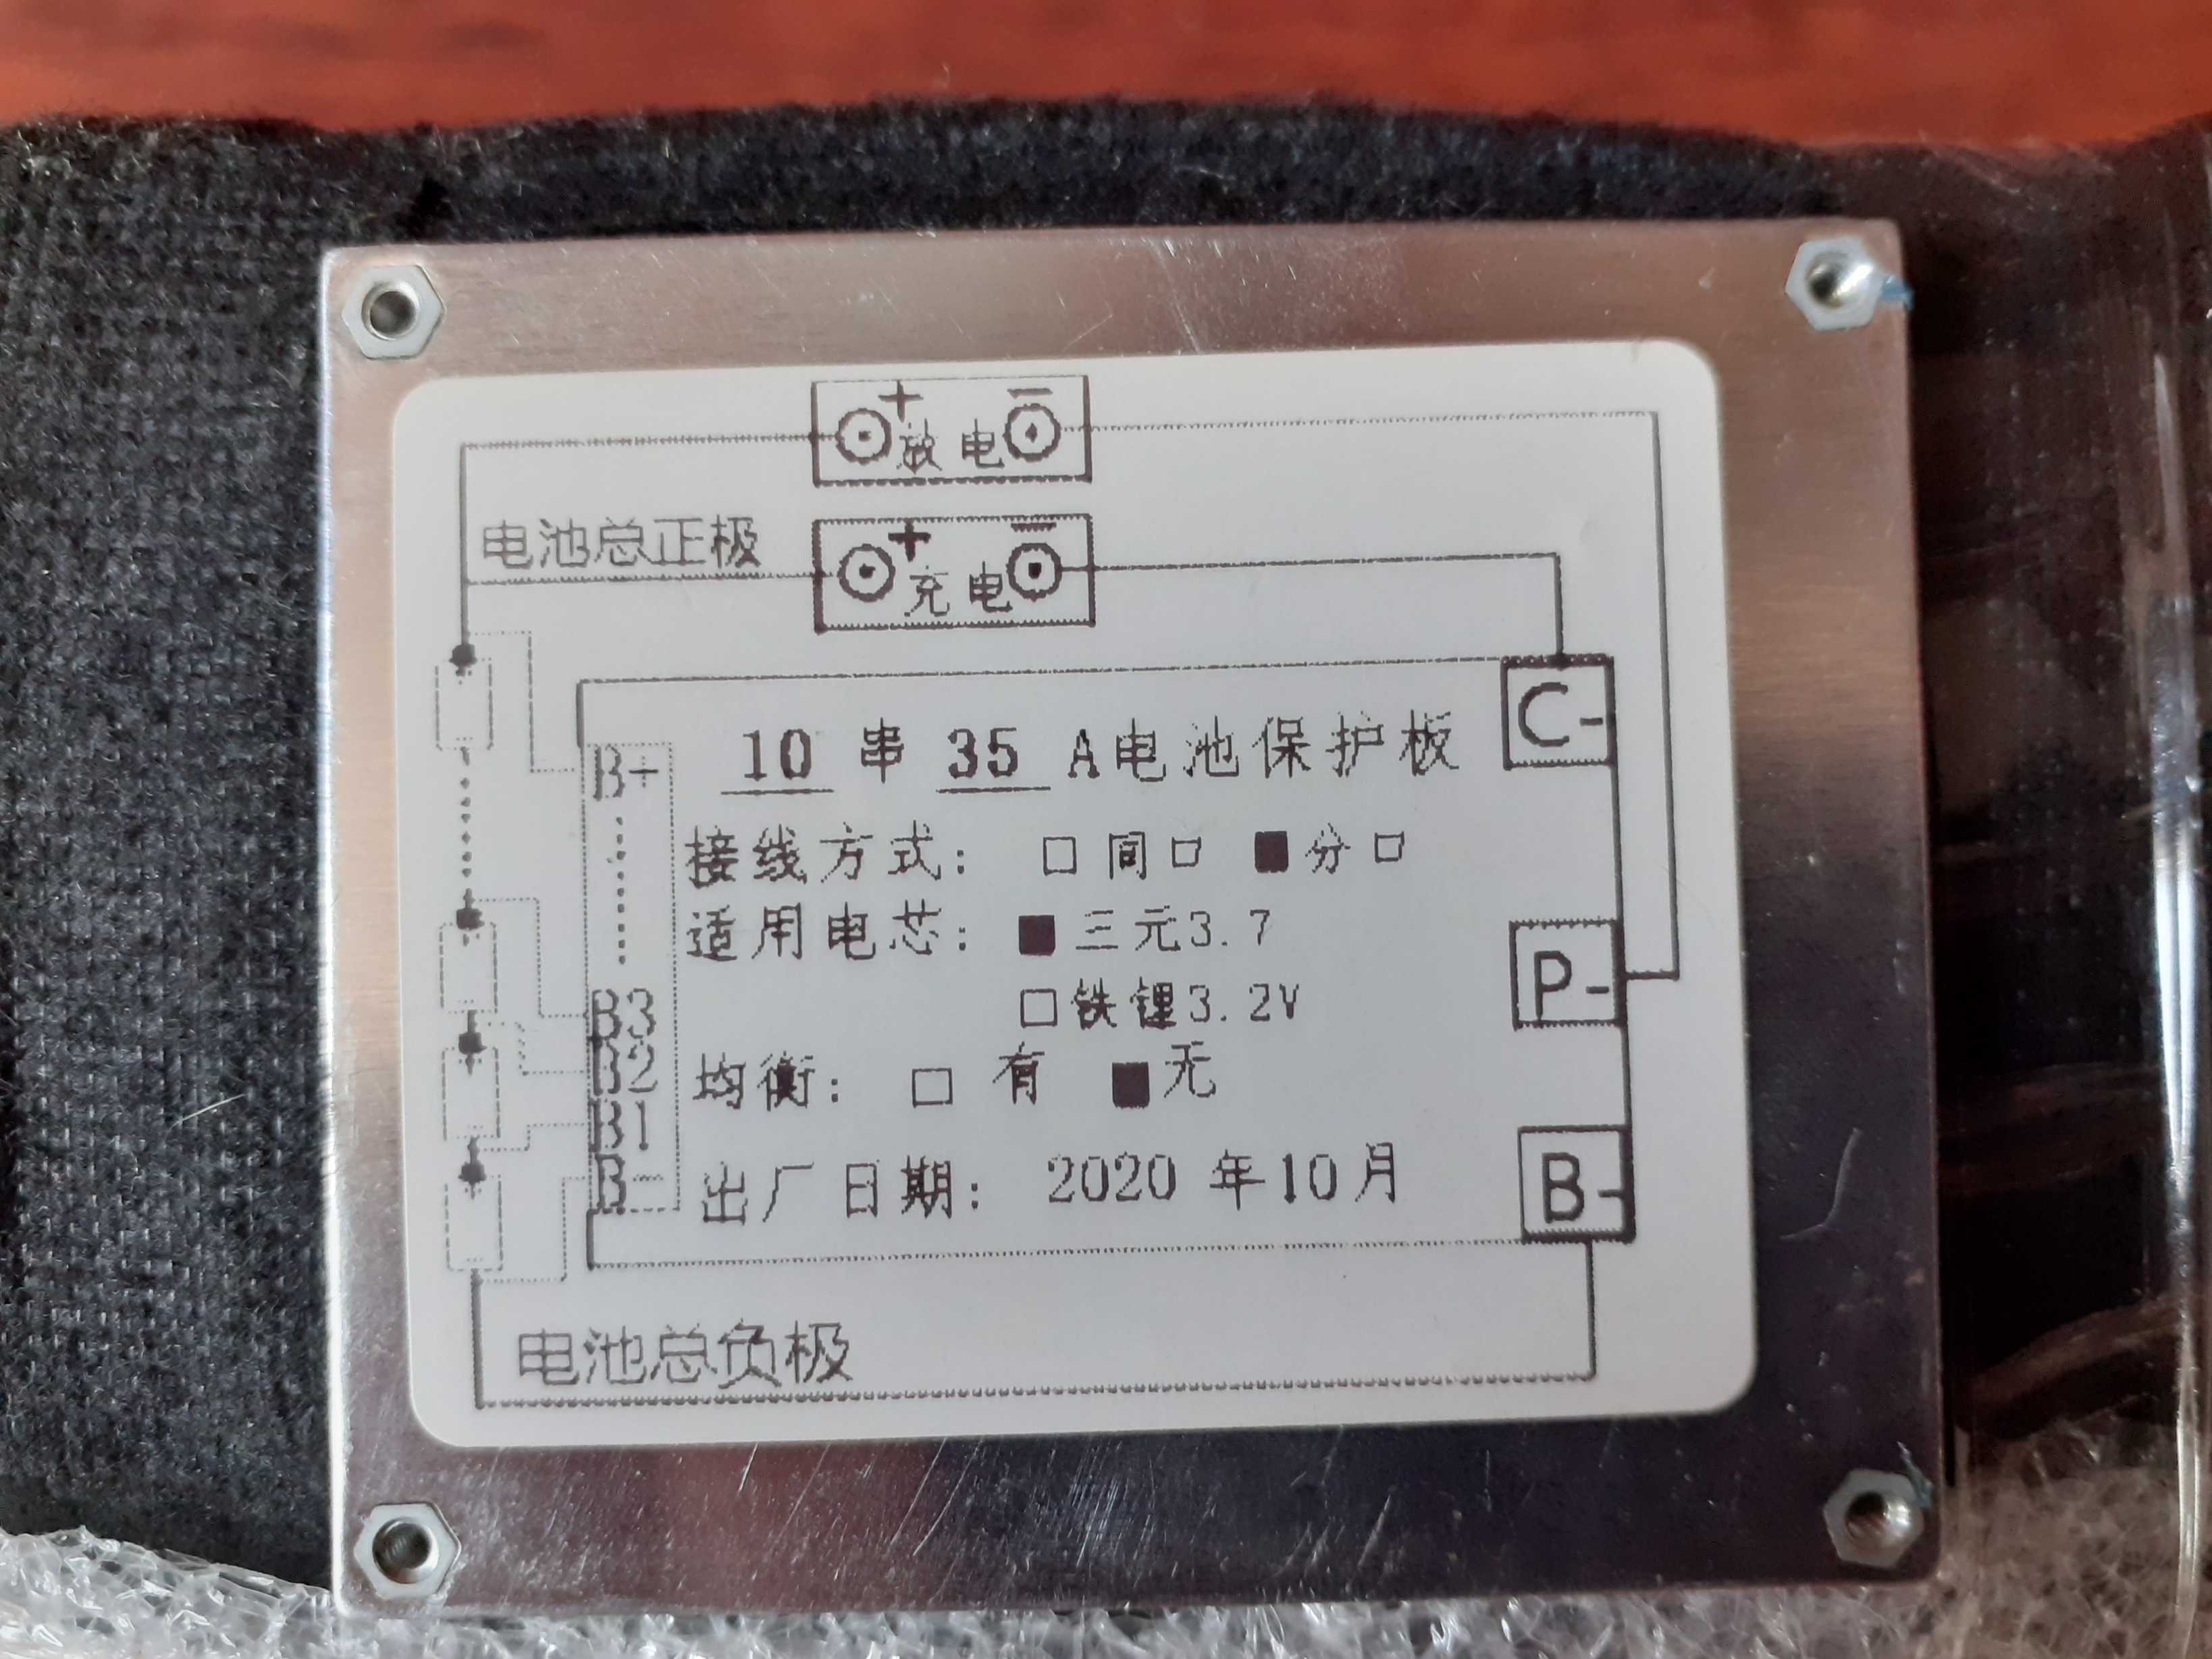 Акумулятор літієвий з платою BMS 42,5V вольт, 21,7A ампер.